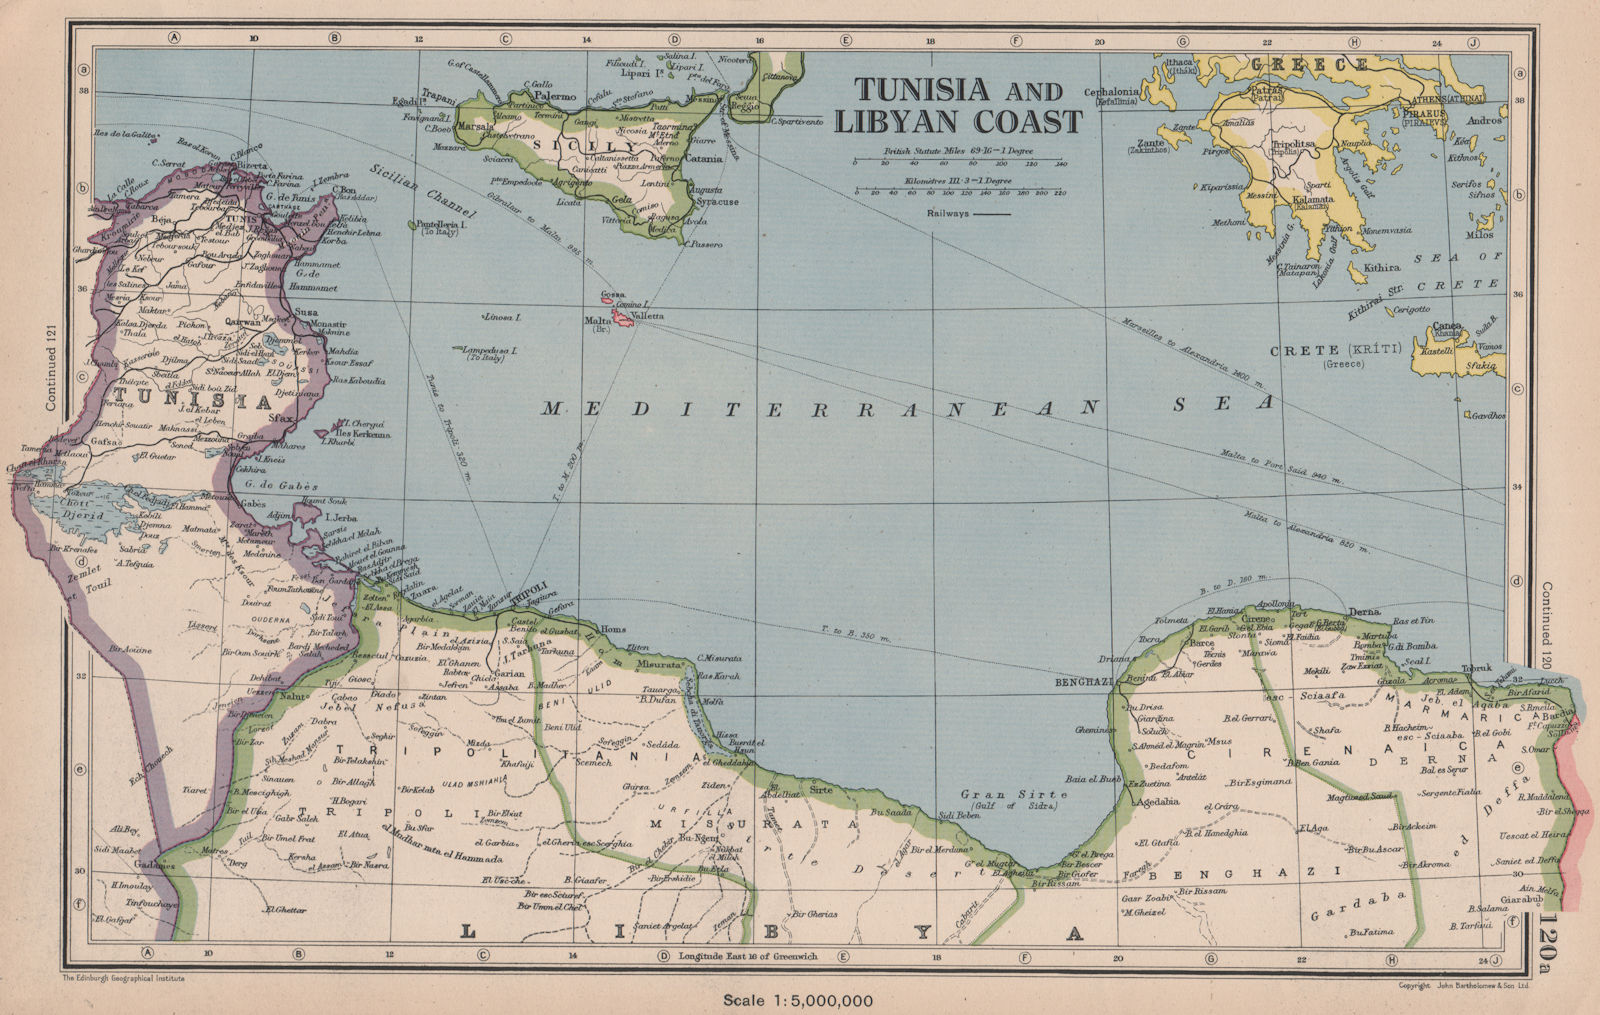 MEDITERRANEAN. Tunisia/Libyan coast. Sicily. Gulf of Sirte. BARTHOLOMEW 1944 map